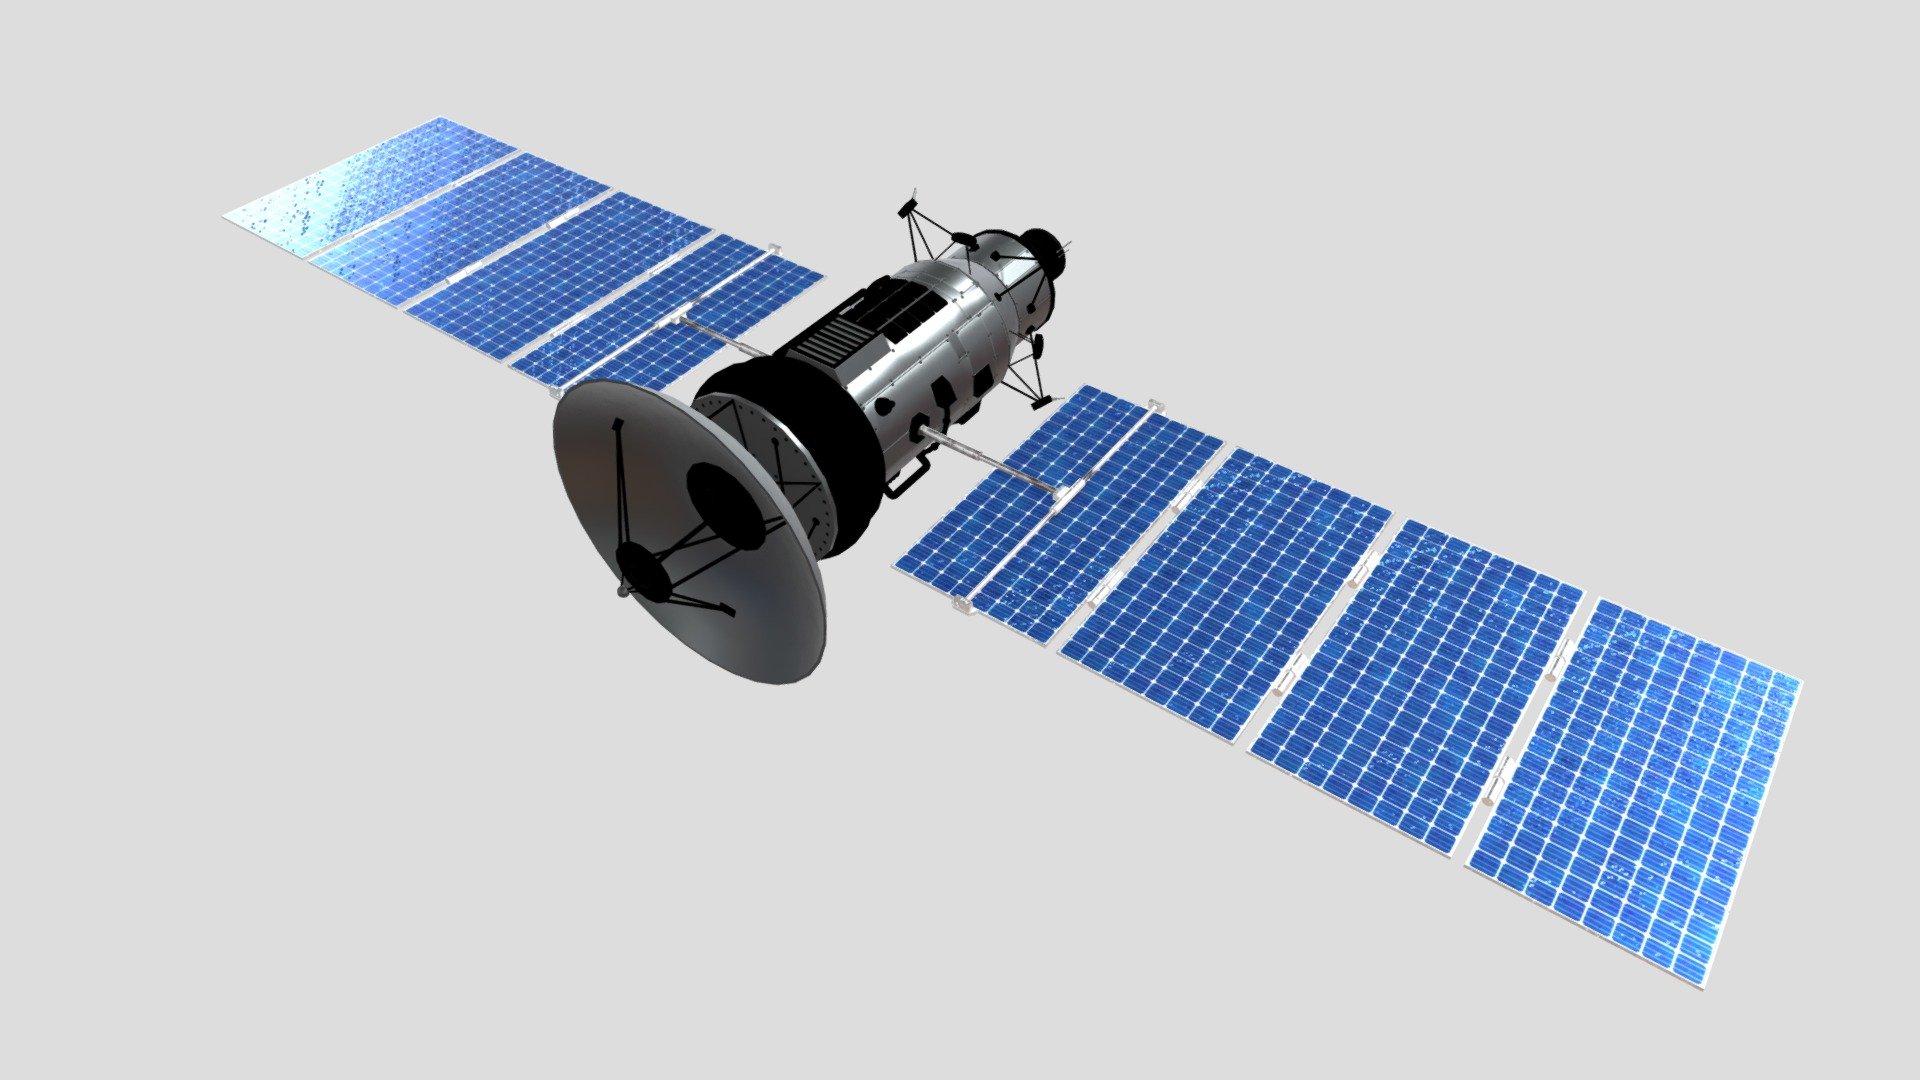 Communication satellite 3D model - Communication satellite 3D model - Buy Royalty Free 3D model by Jackey&Design (@1394725324zhang) 3d model